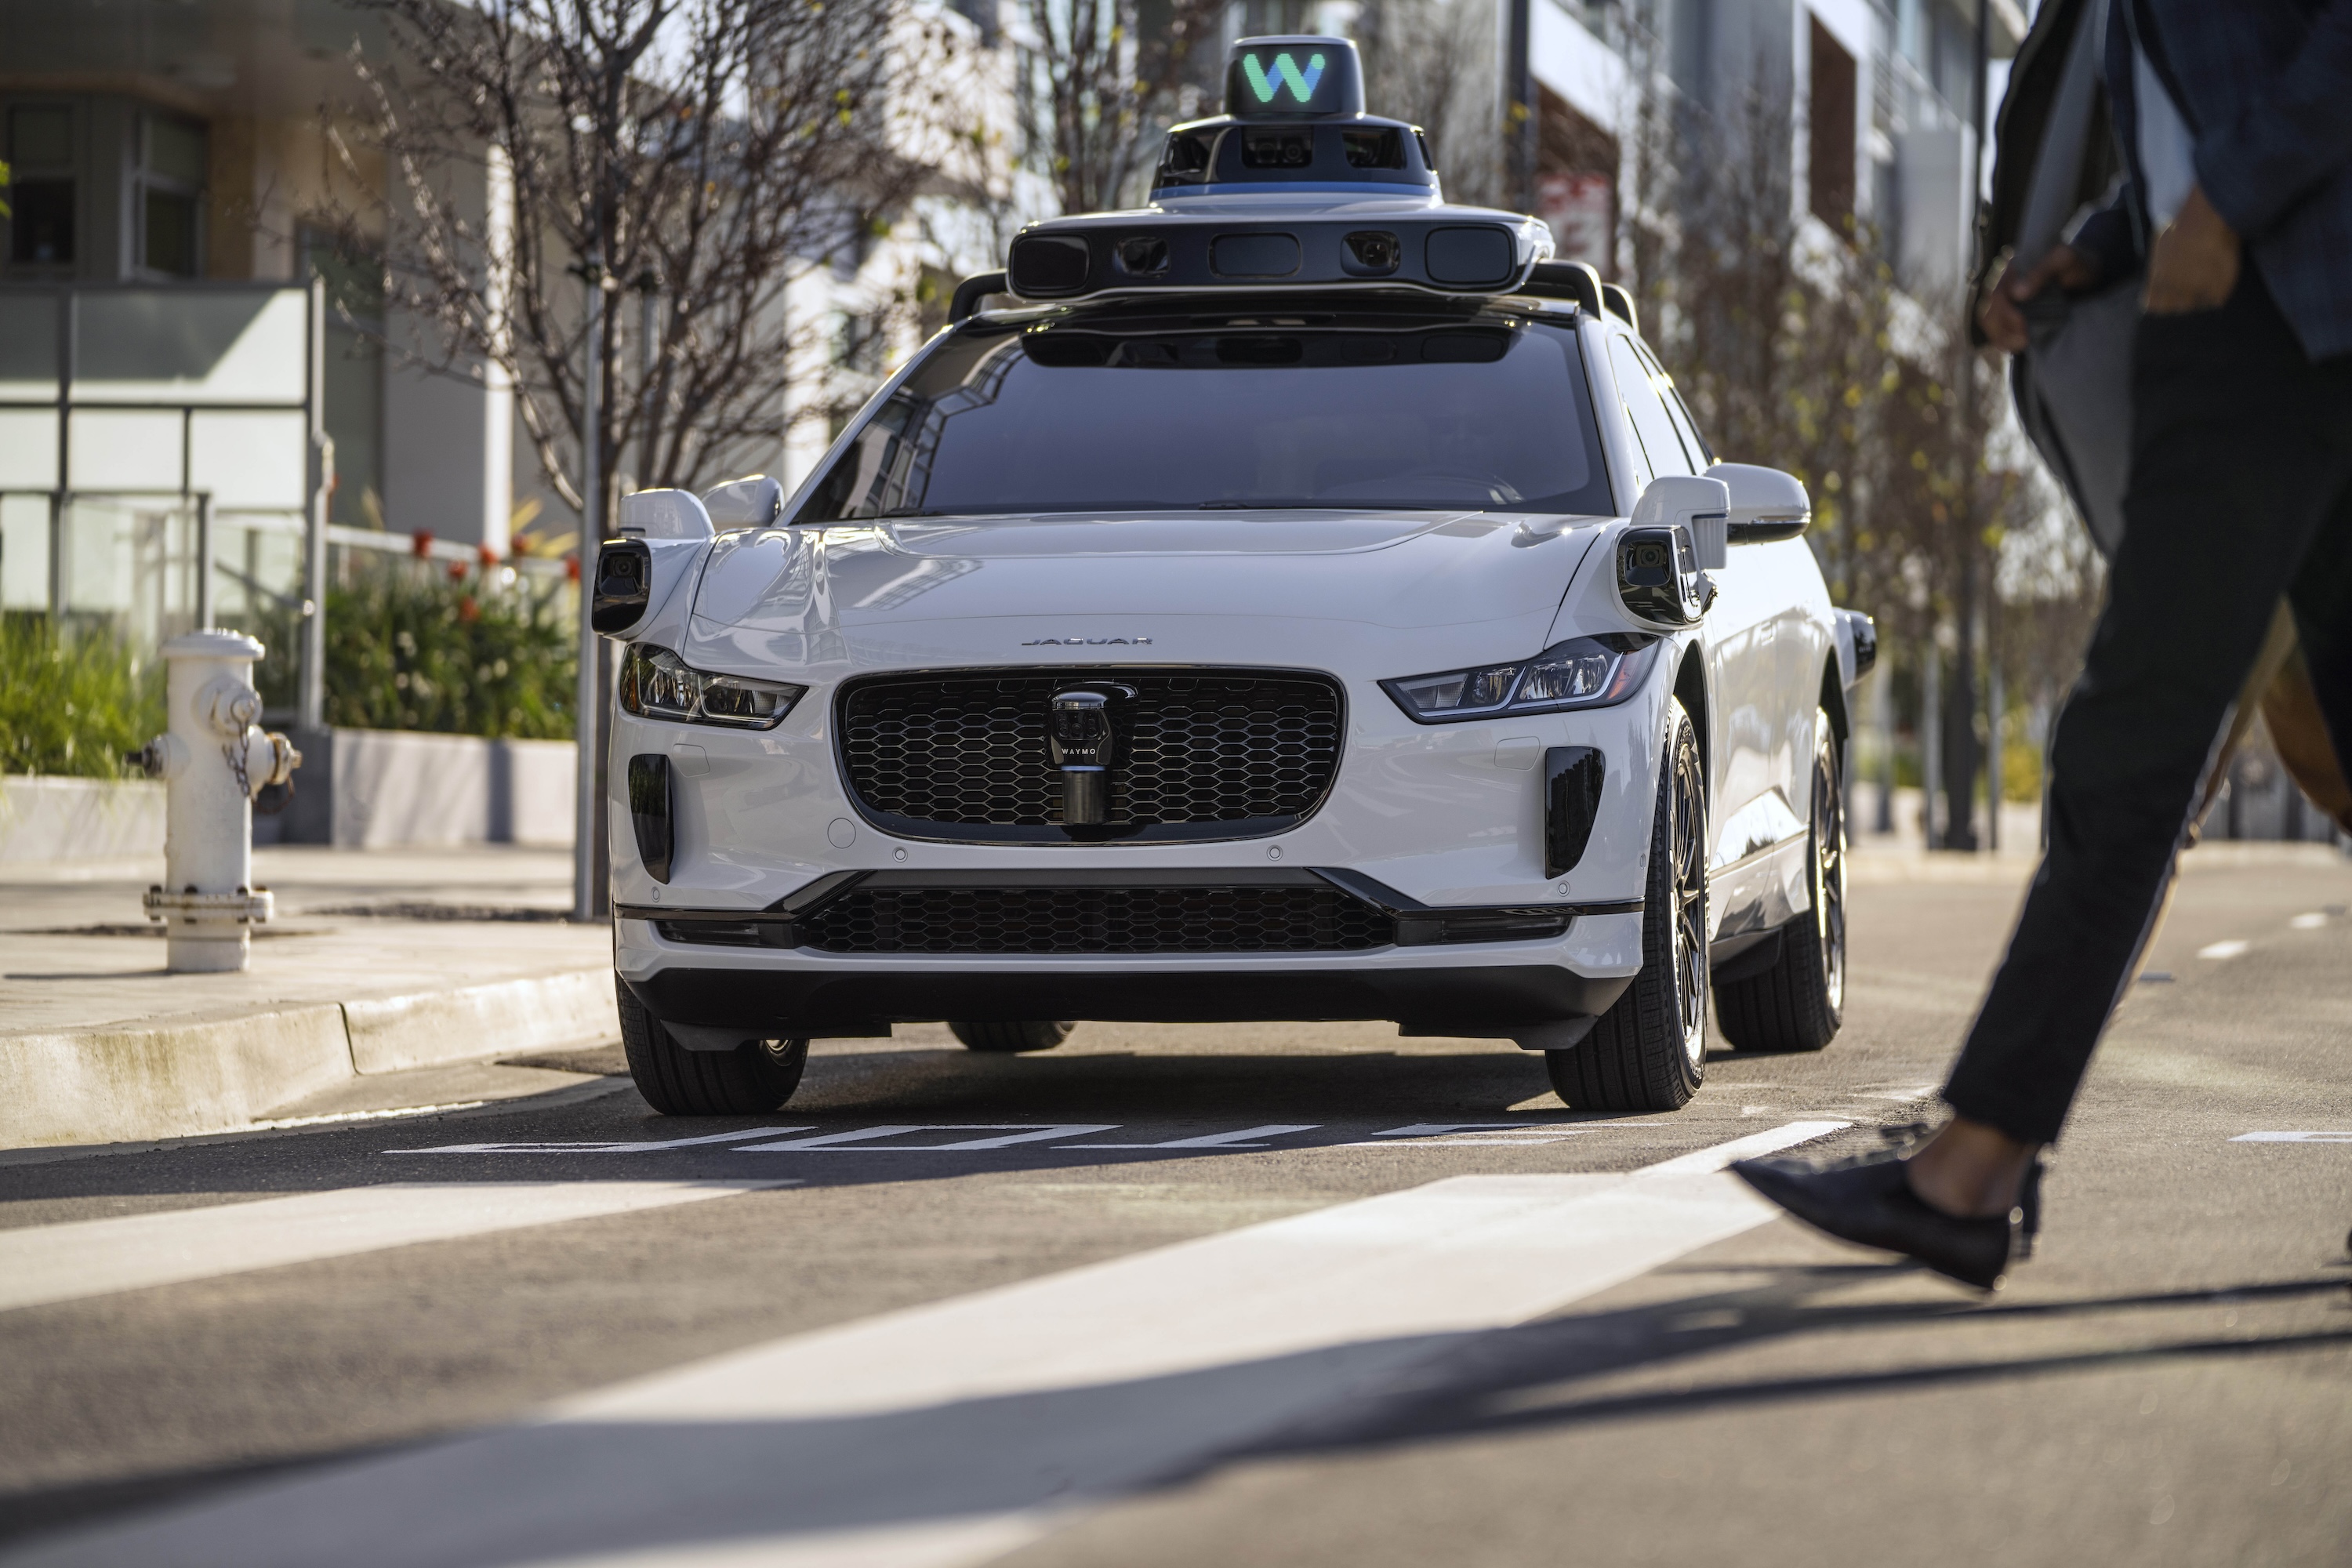 La Californie vient d'ouvrir une boîte de Pandore en autorisant les taxis autonomes à circuler 24h/24